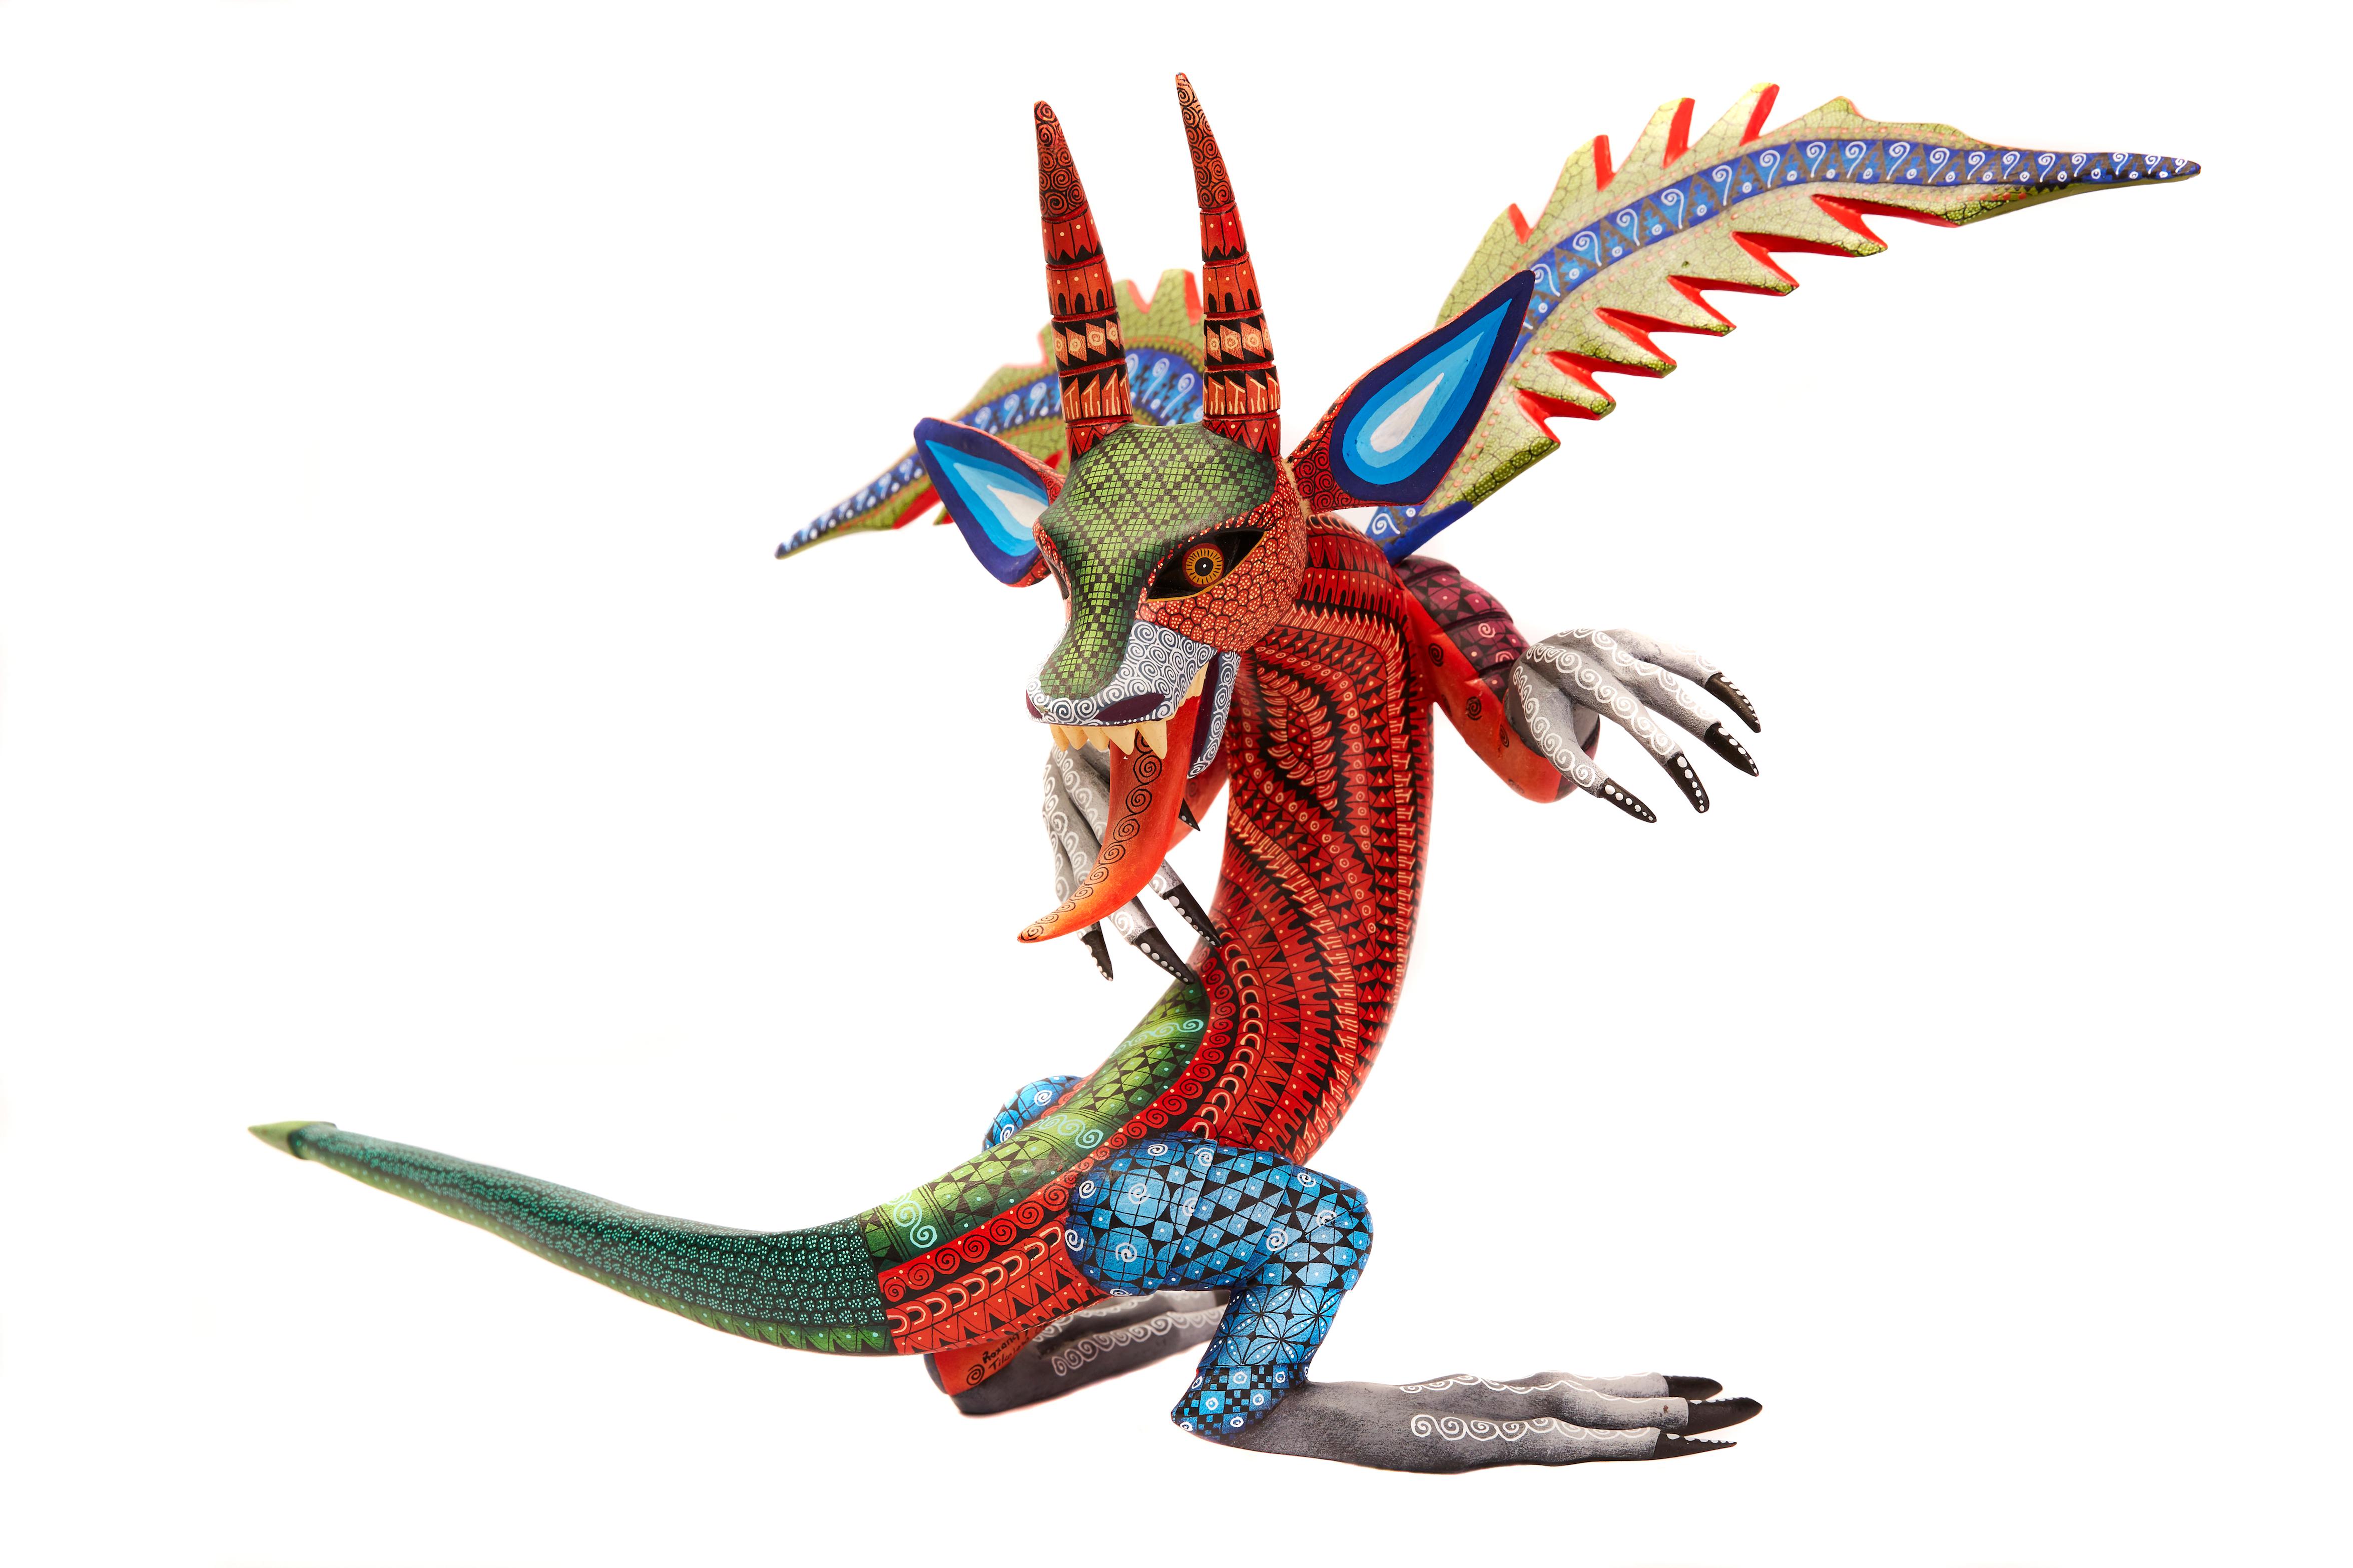 Dragon Fantastico - Fantastic Dragon Alebrije - Mexican Folk Art - Wood Carving  - Sculpture by Roxana y Jesus Hernandez